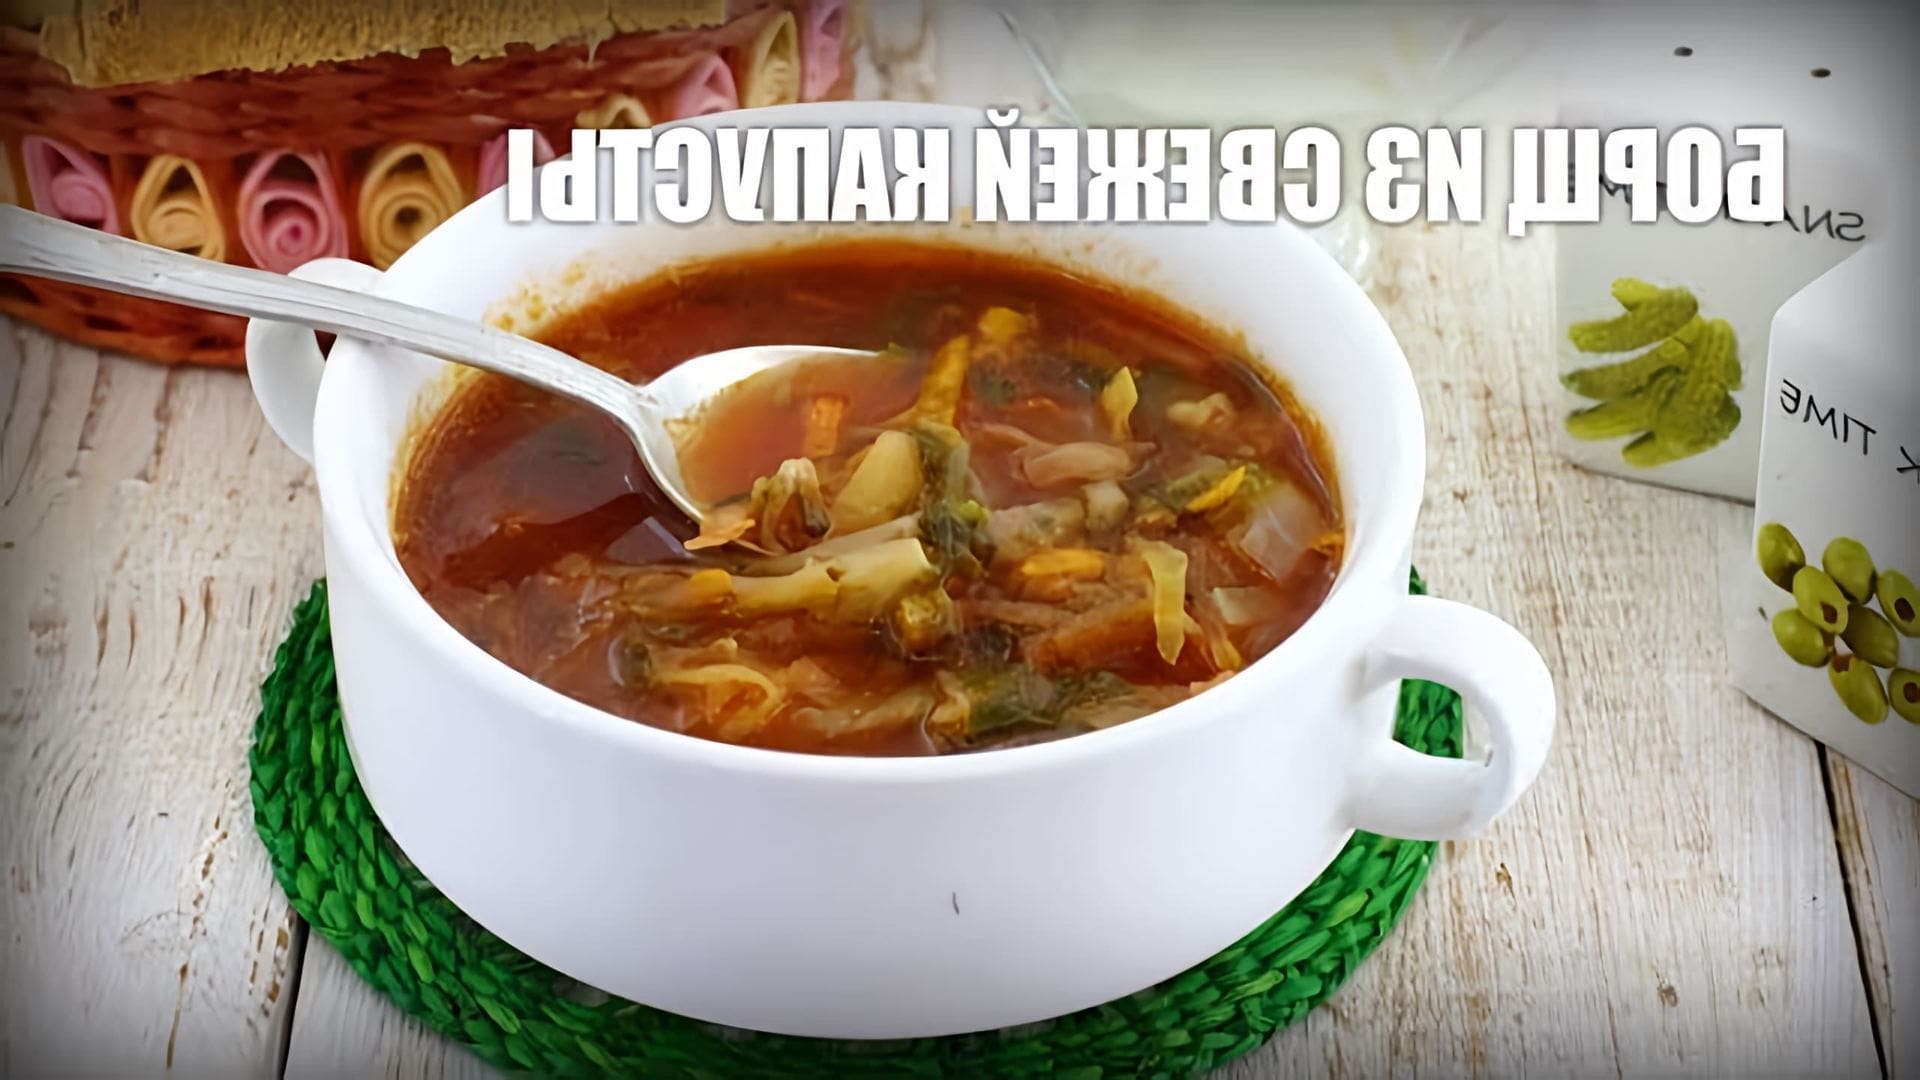 В данном видео демонстрируется рецепт приготовления борща из свежей капусты